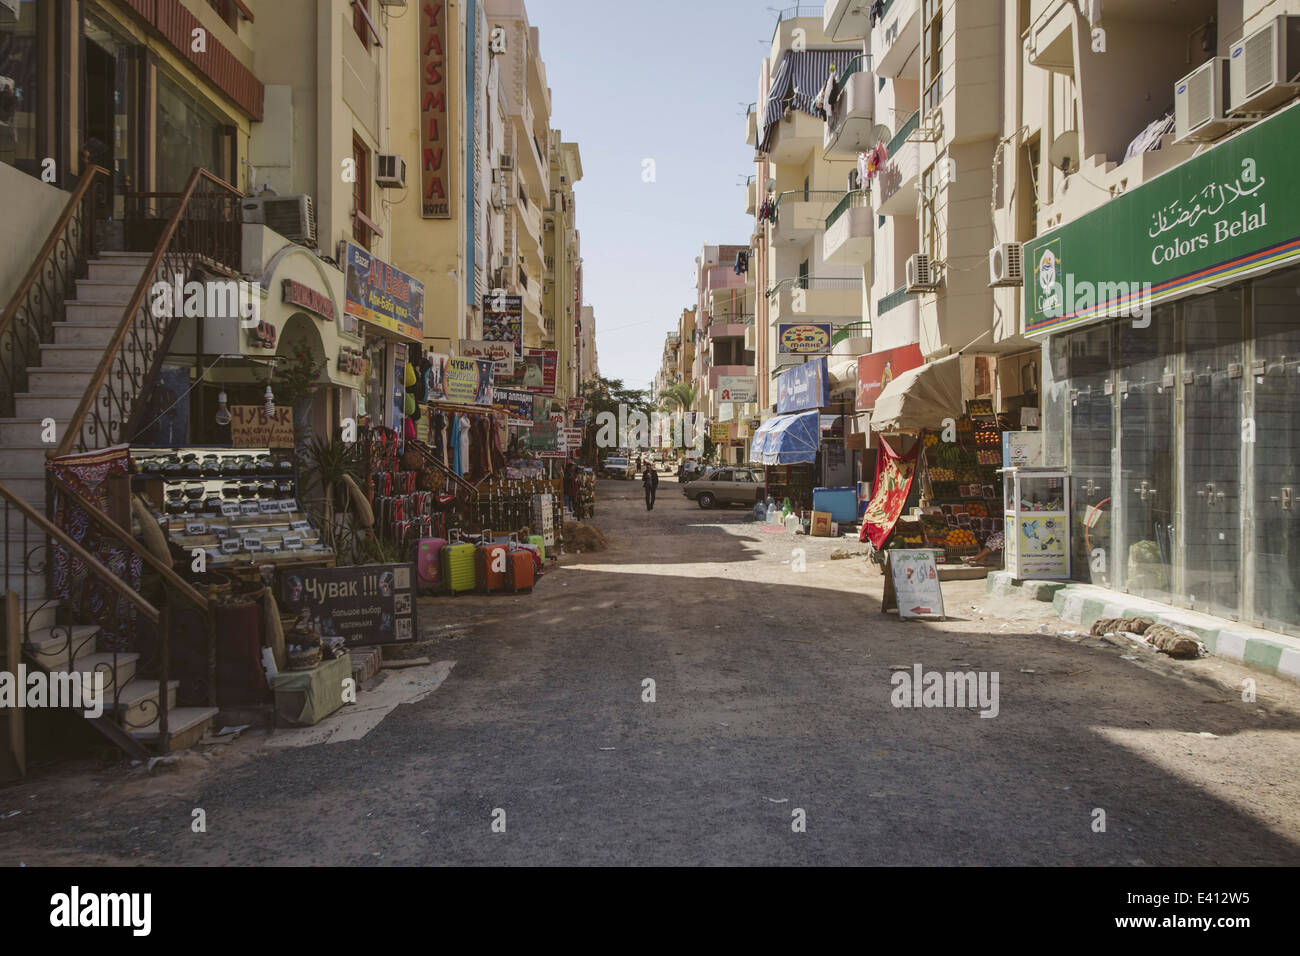 Egypt, Hurghada, view of shopping street Stock Photo